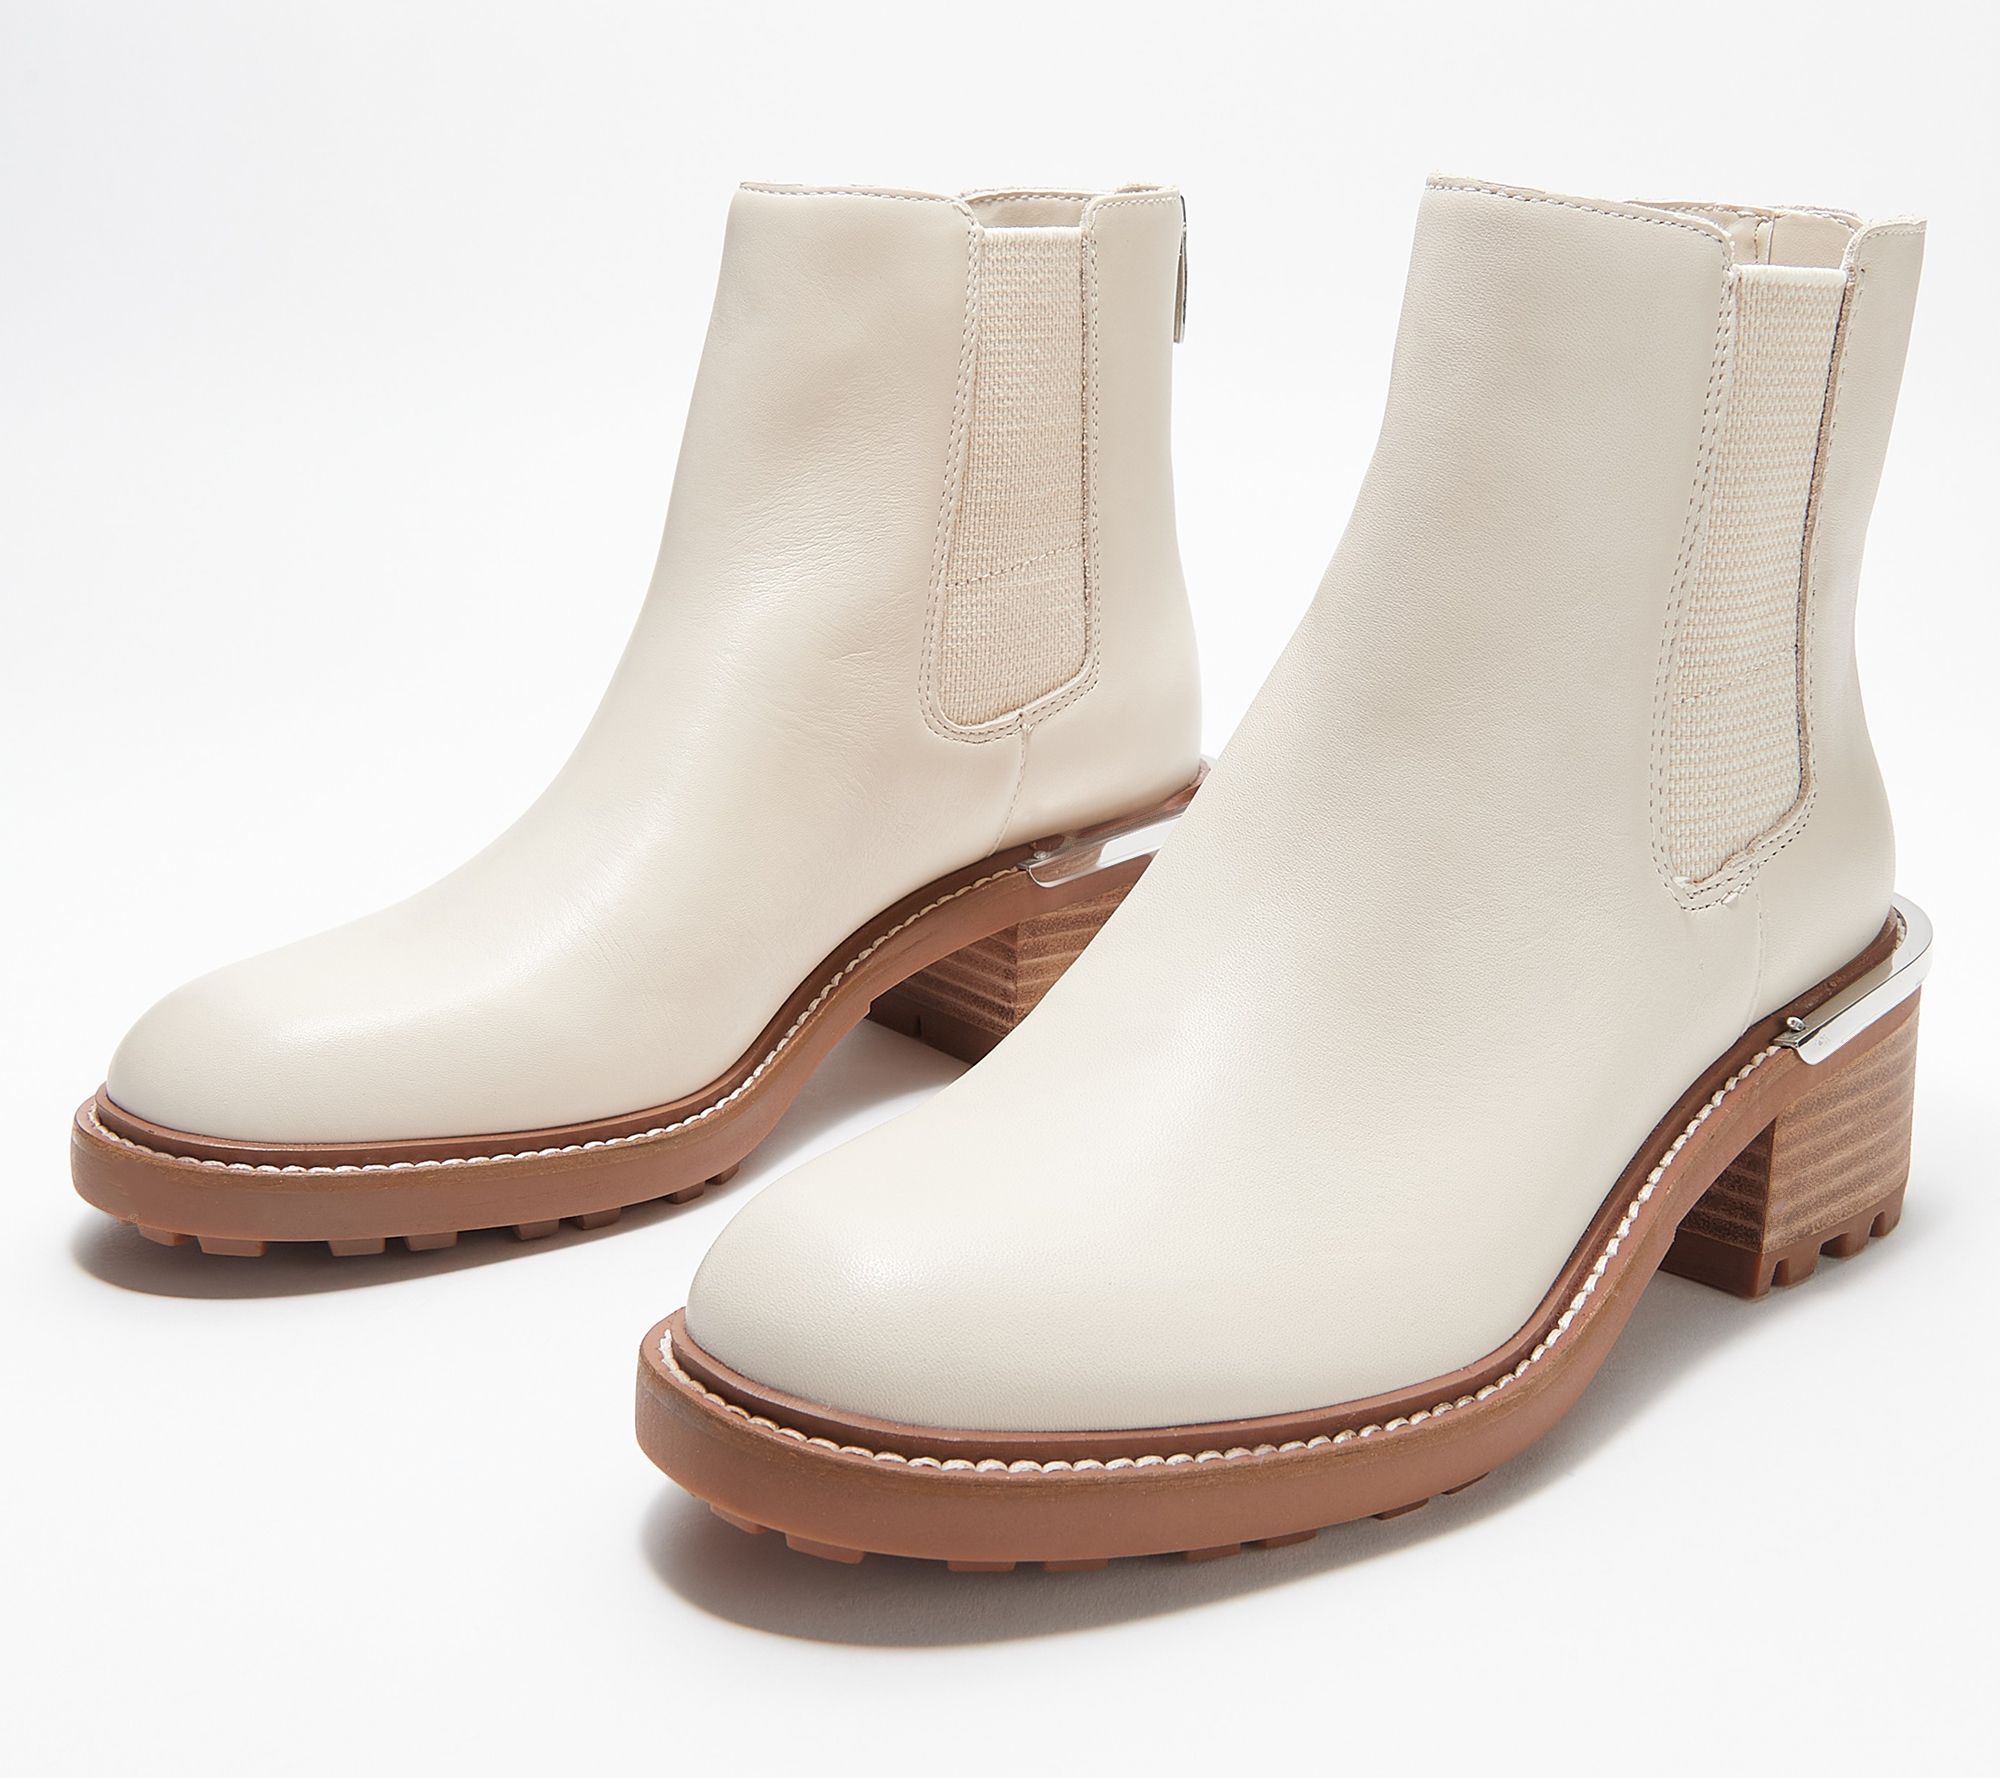 $150  Vince camuto shoes, Louise et cie, Rain boots